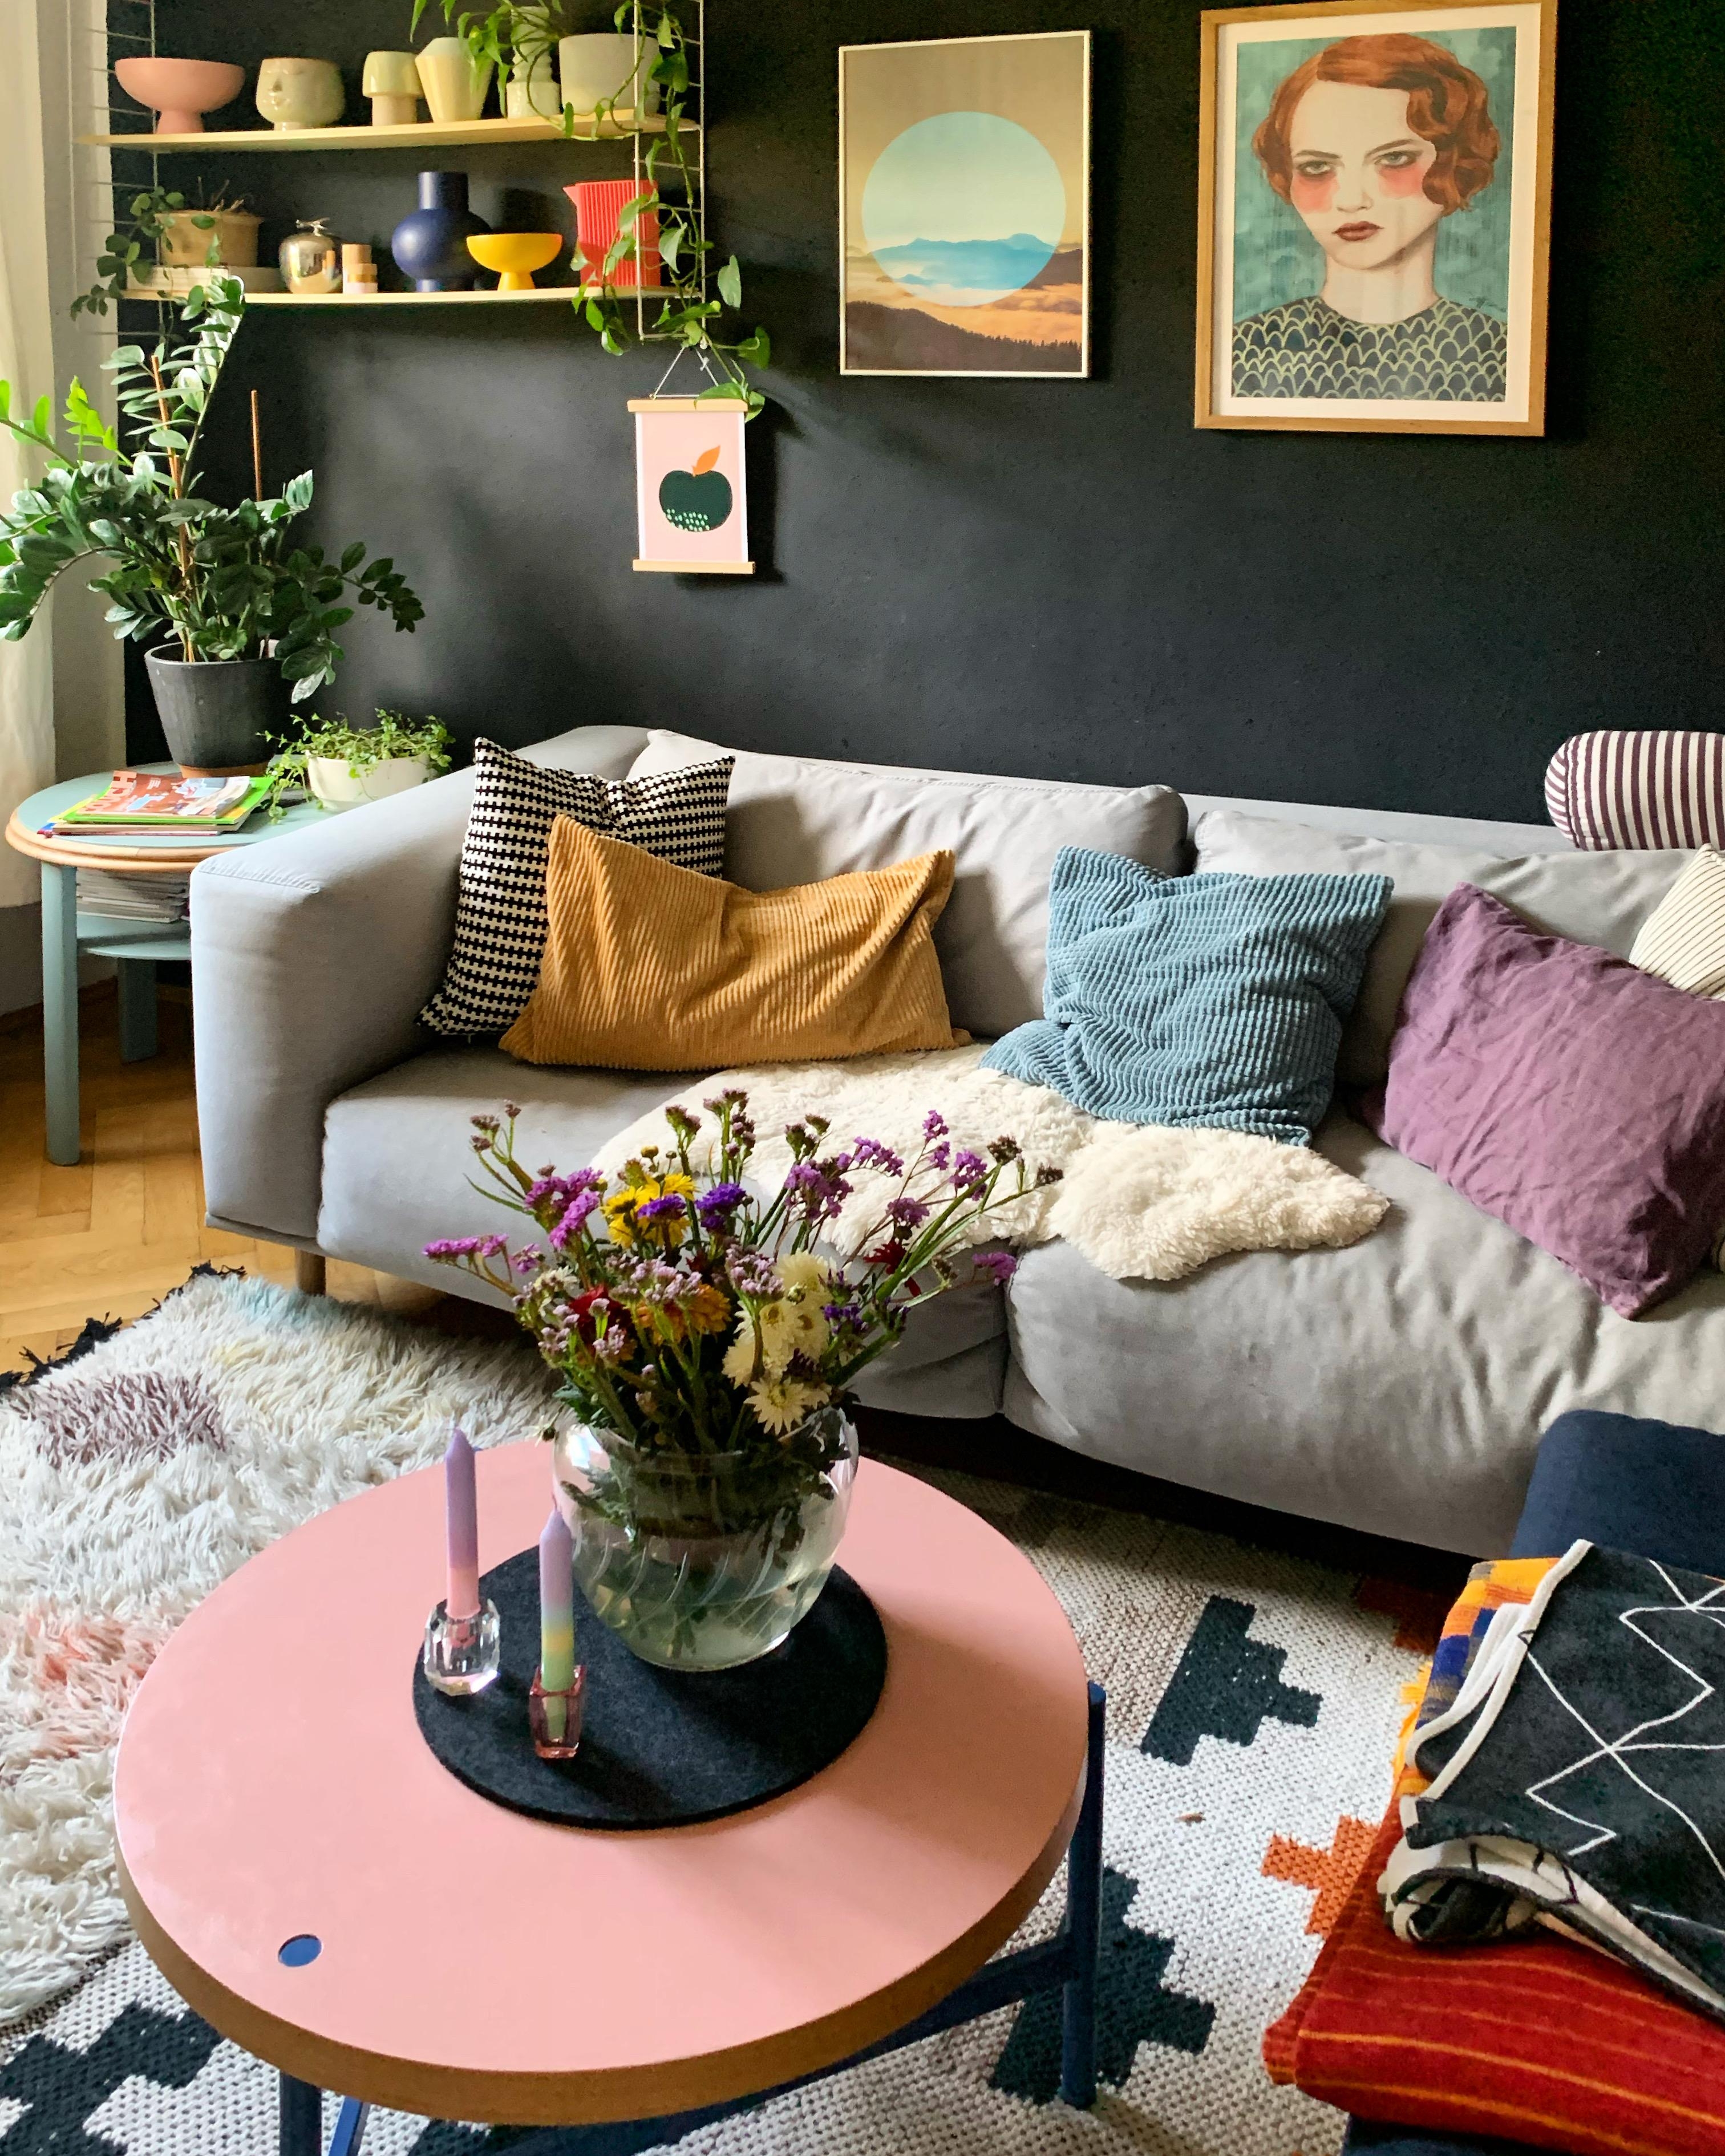 Trotz schwarzer Wand ganz schön bunt 😉
#colourful #bunt #wohnzimmer #couch #blackwall #gemütlich 